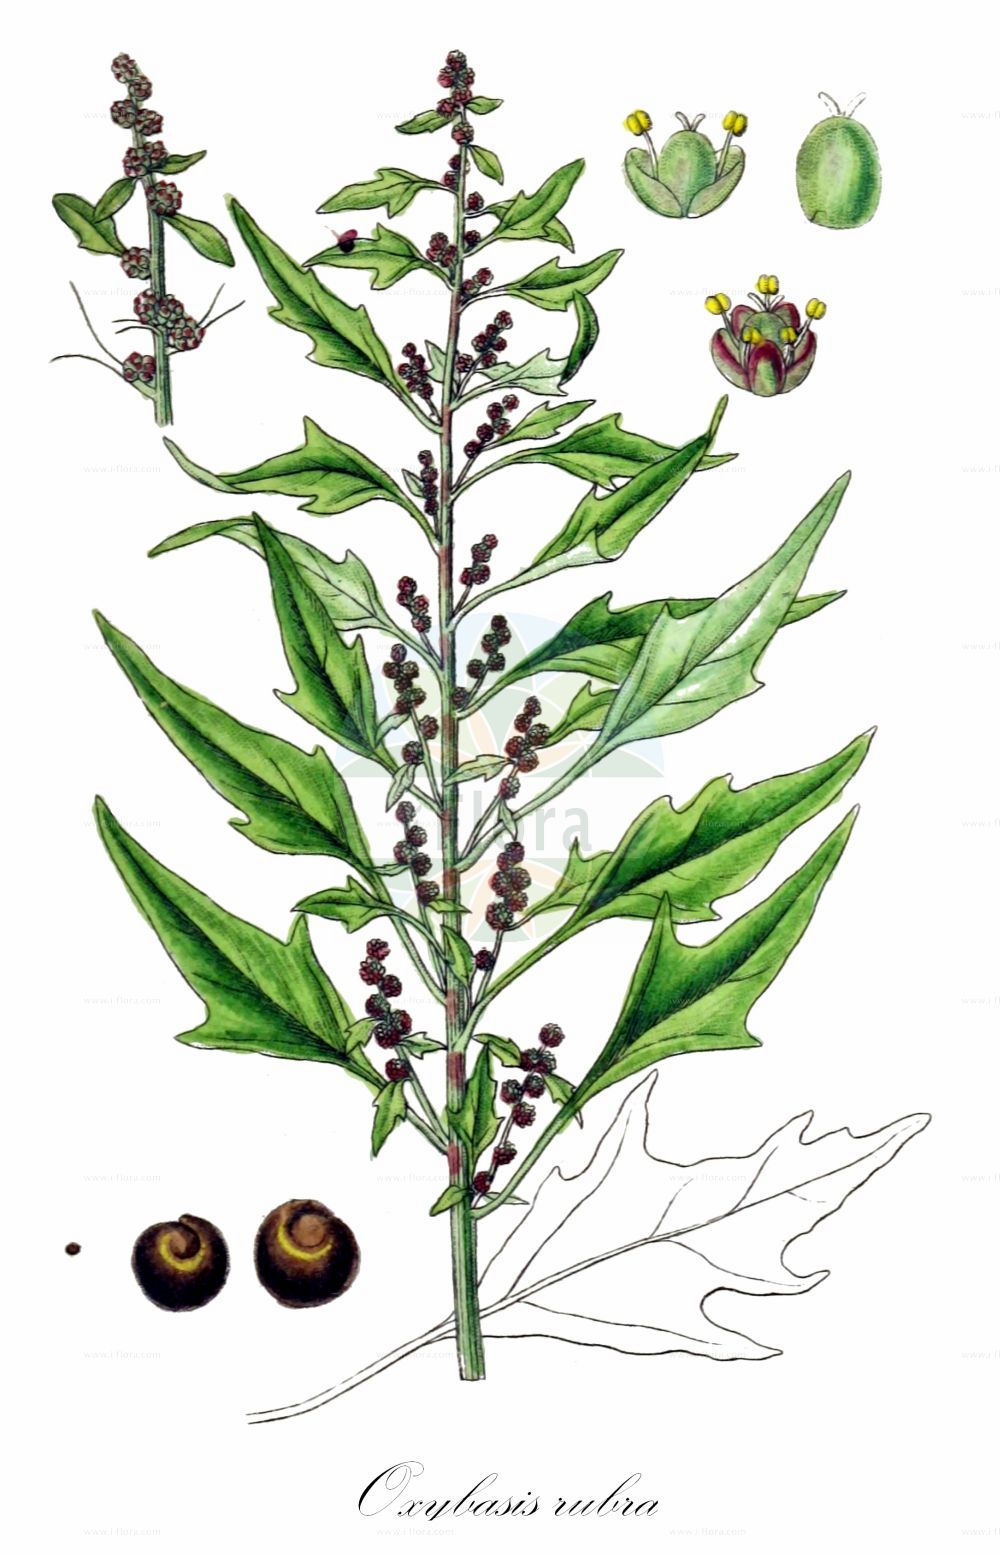 Historische Abbildung von Oxybasis rubra (Roter Gänsefuß - Red Goosefoot). Das Bild zeigt Blatt, Bluete, Frucht und Same. ---- Historical Drawing of Oxybasis rubra (Roter Gänsefuß - Red Goosefoot). The image is showing leaf, flower, fruit and seed.(Oxybasis rubra,Roter Gänsefuß,Red Goosefoot,Blitum rubrum,Chenopodium blitoides,Chenopodium rubrum,Oxybasis rubra,Roter Gaensefuss,Red Goosefoot,Coast Blite,Oxybasis,Amaranthaceae,Fuchsschwanzgewächse,Pigweed family,Blatt,Bluete,Frucht,Same,leaf,flower,fruit,seed,Sturm (1796f))